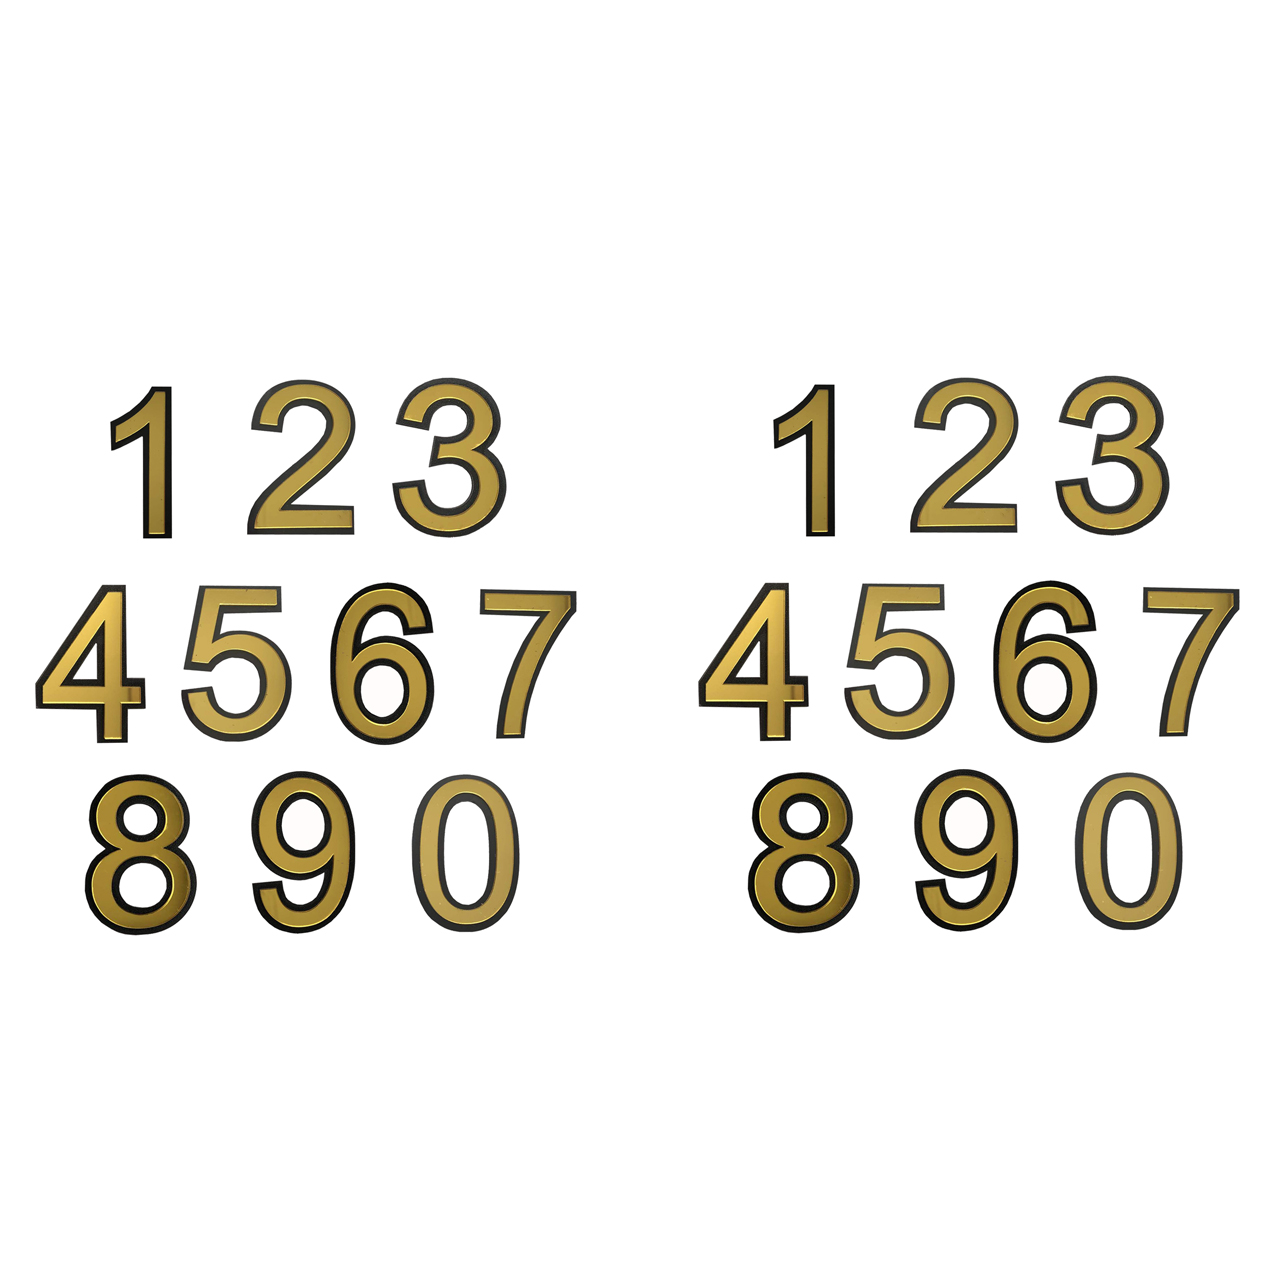 تابلو نشانگر واحد کد S20 مجموعه 20 عددی